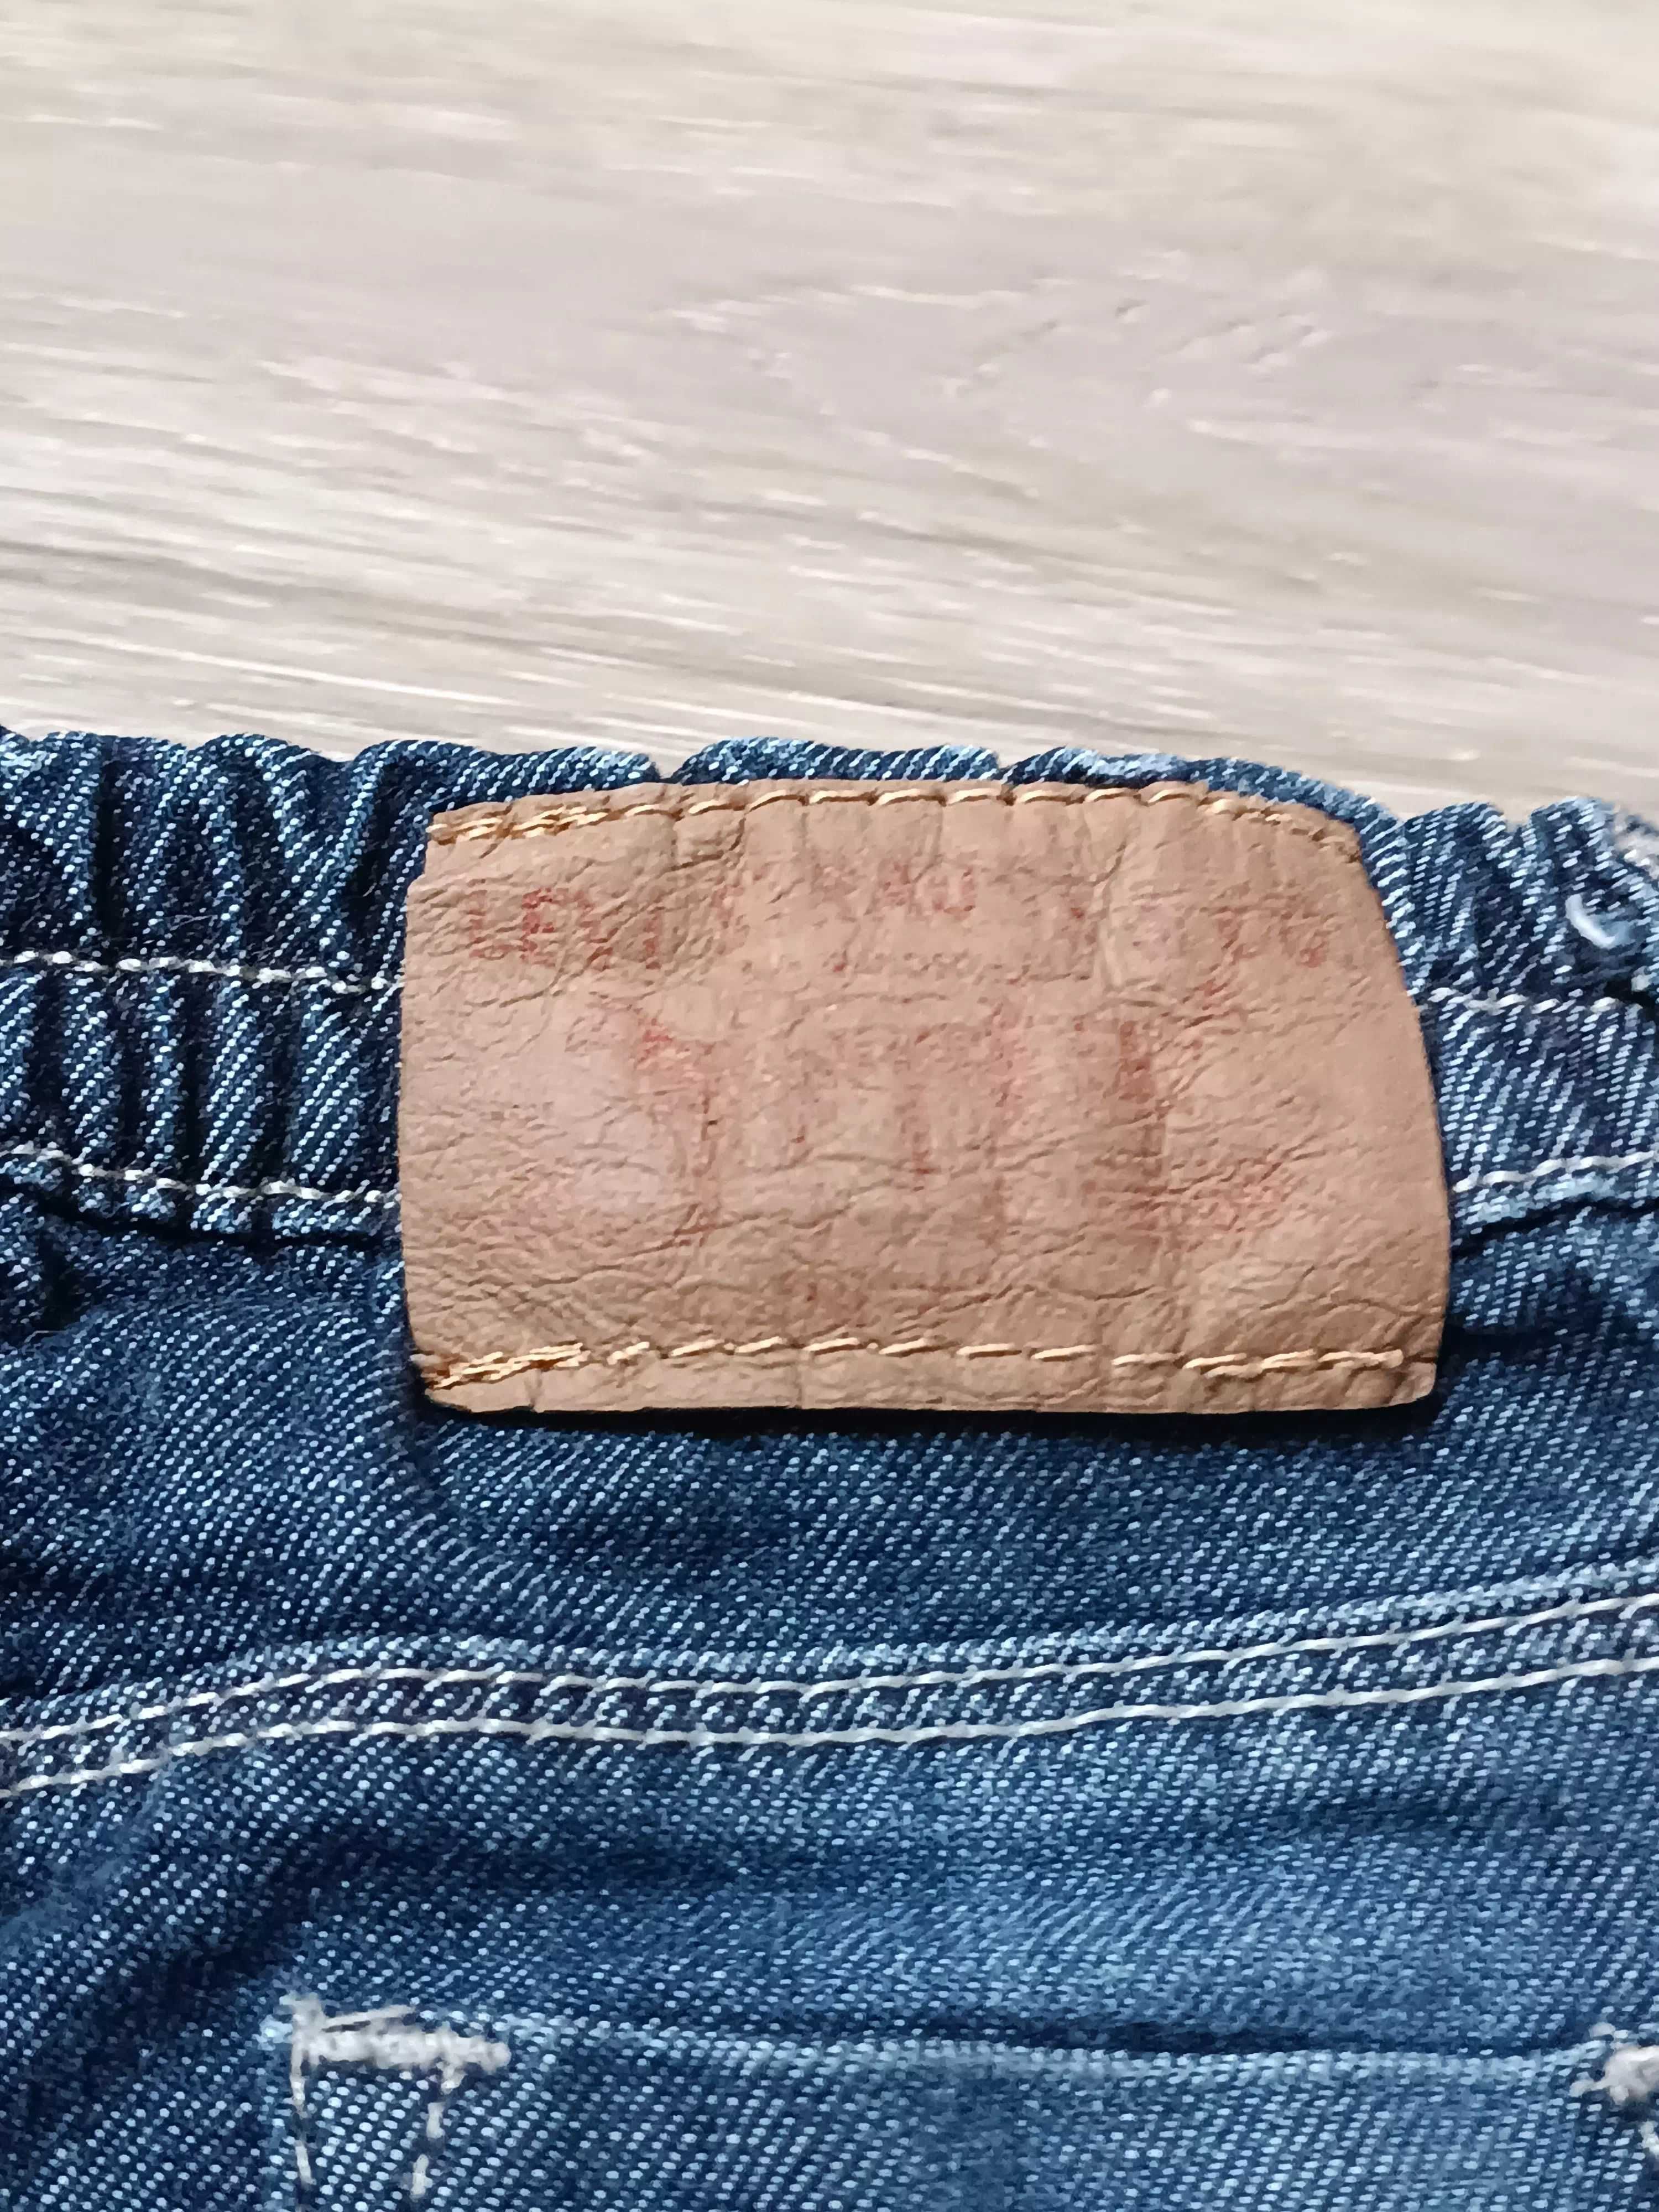 Spódnica miękki jeans regulowany pas kieszonki 'Levi's' Red Tab 80